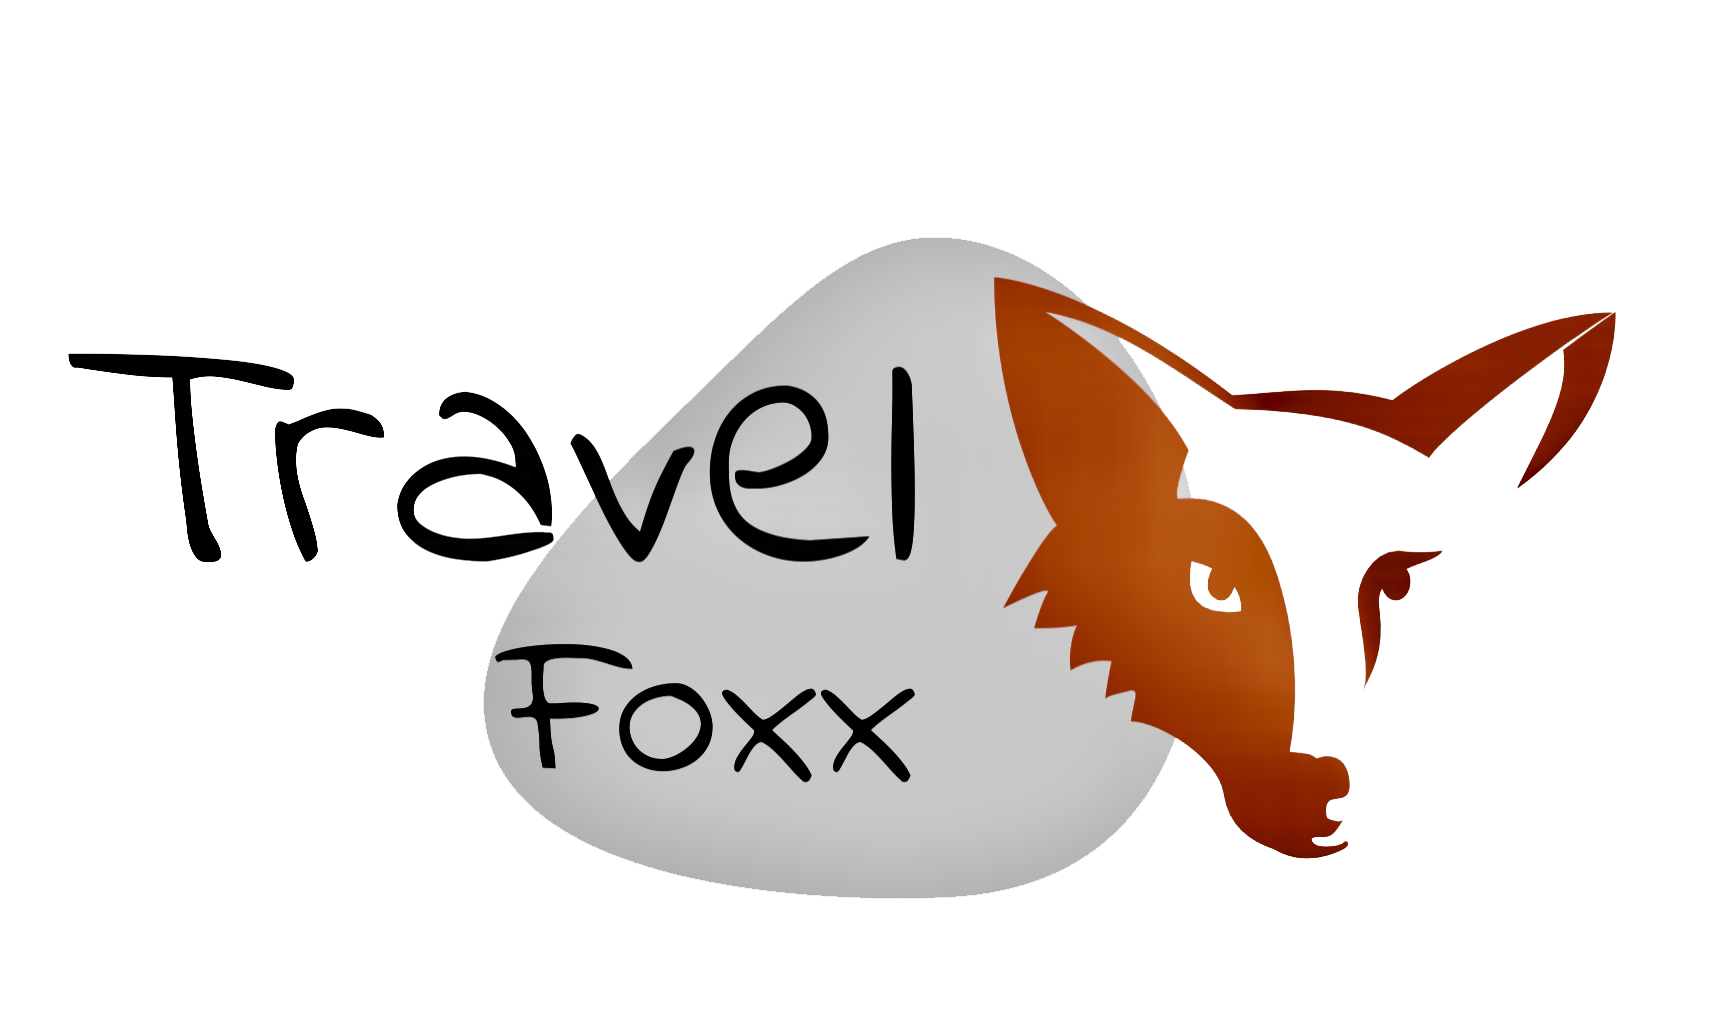 Travel Foxx